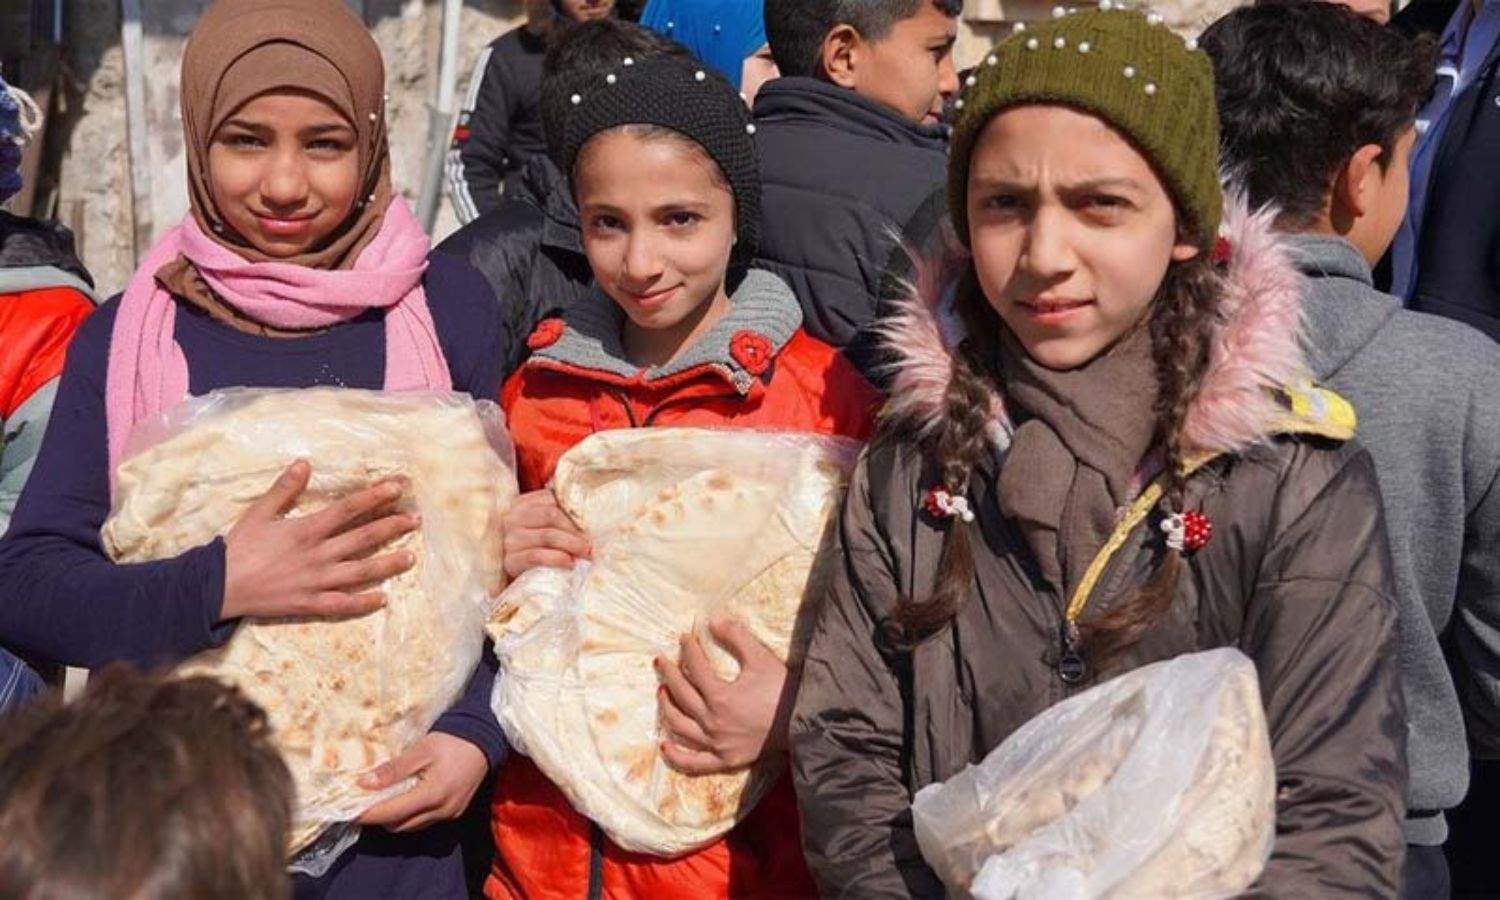 طفلات يحملن ربطات خبز حصلن عليها من أحد المخابز في حلب، حيث يساعد برنامج الأغذية العالمي في توزيع الطعام (WFP)